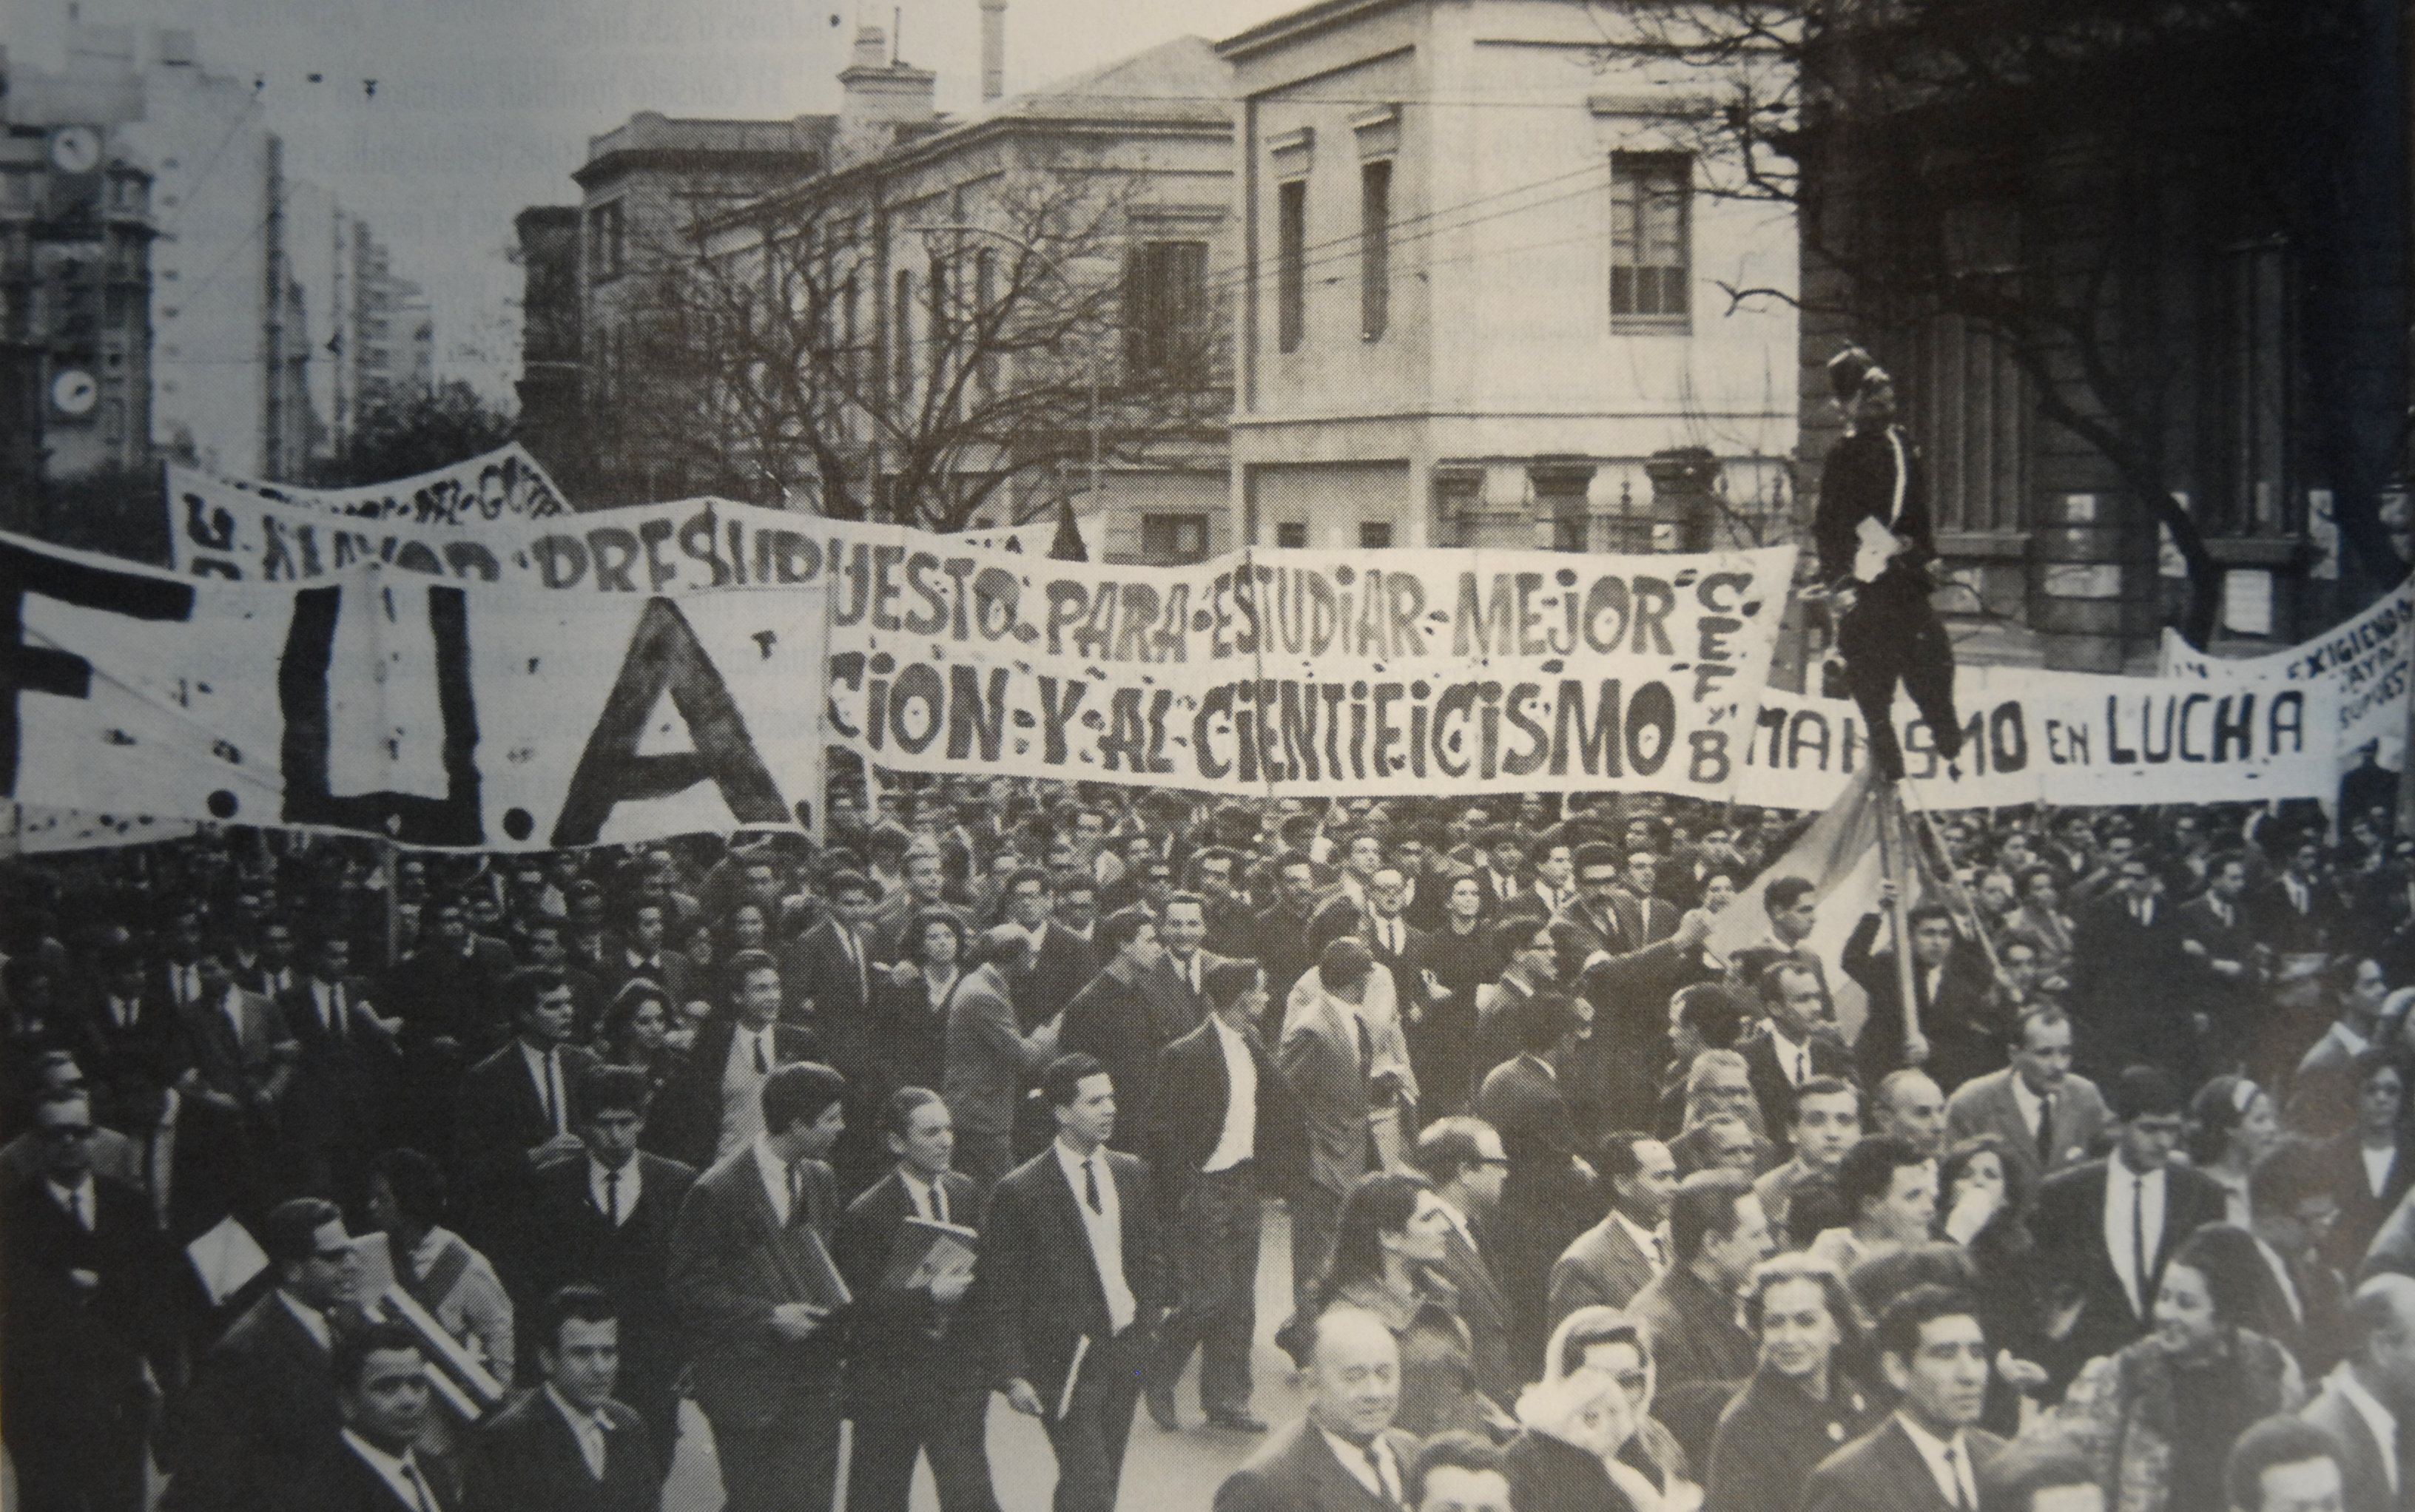 Estudiantes reformistas (FUA), marchan el 7-10-1964